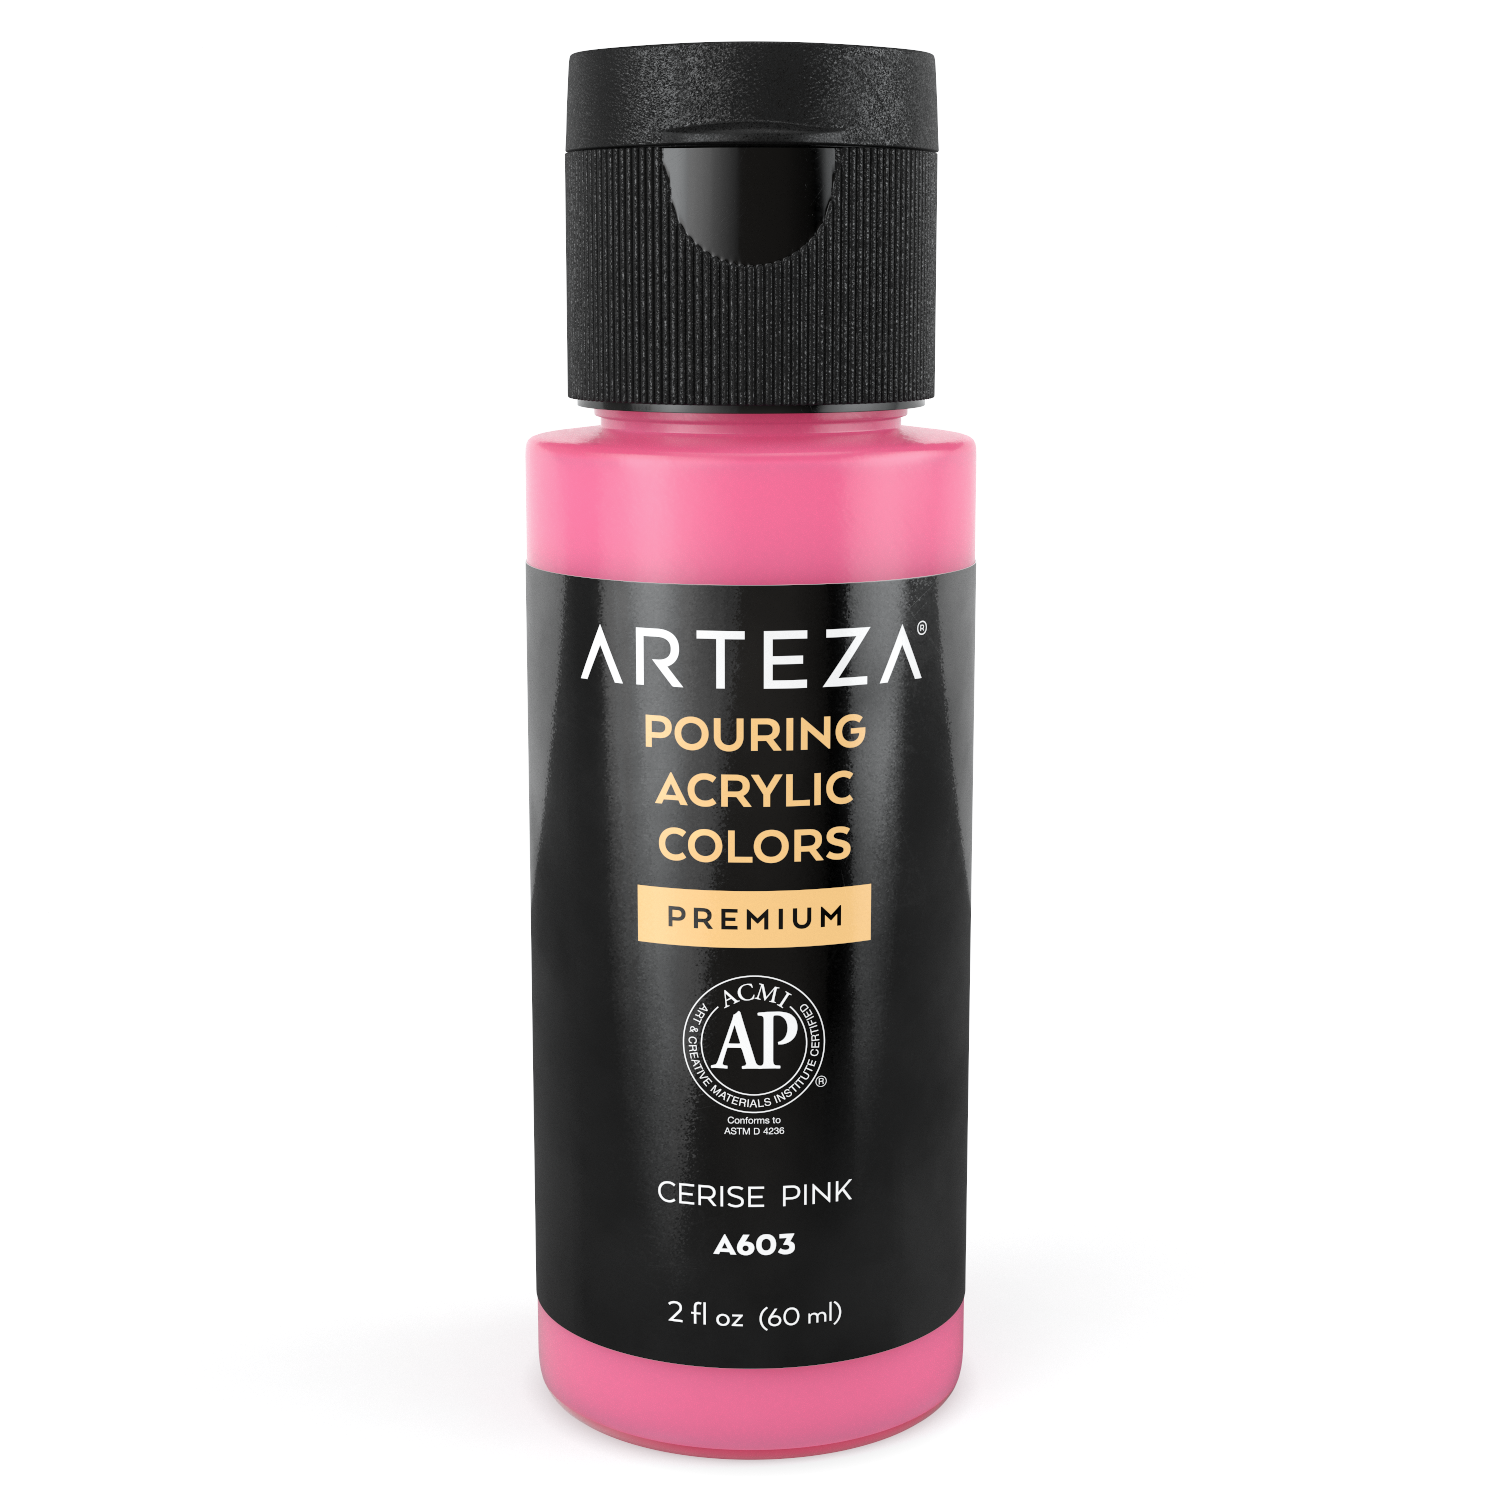 Arteza Pouring Acrylic Paint, 2oz Bottle - Coral